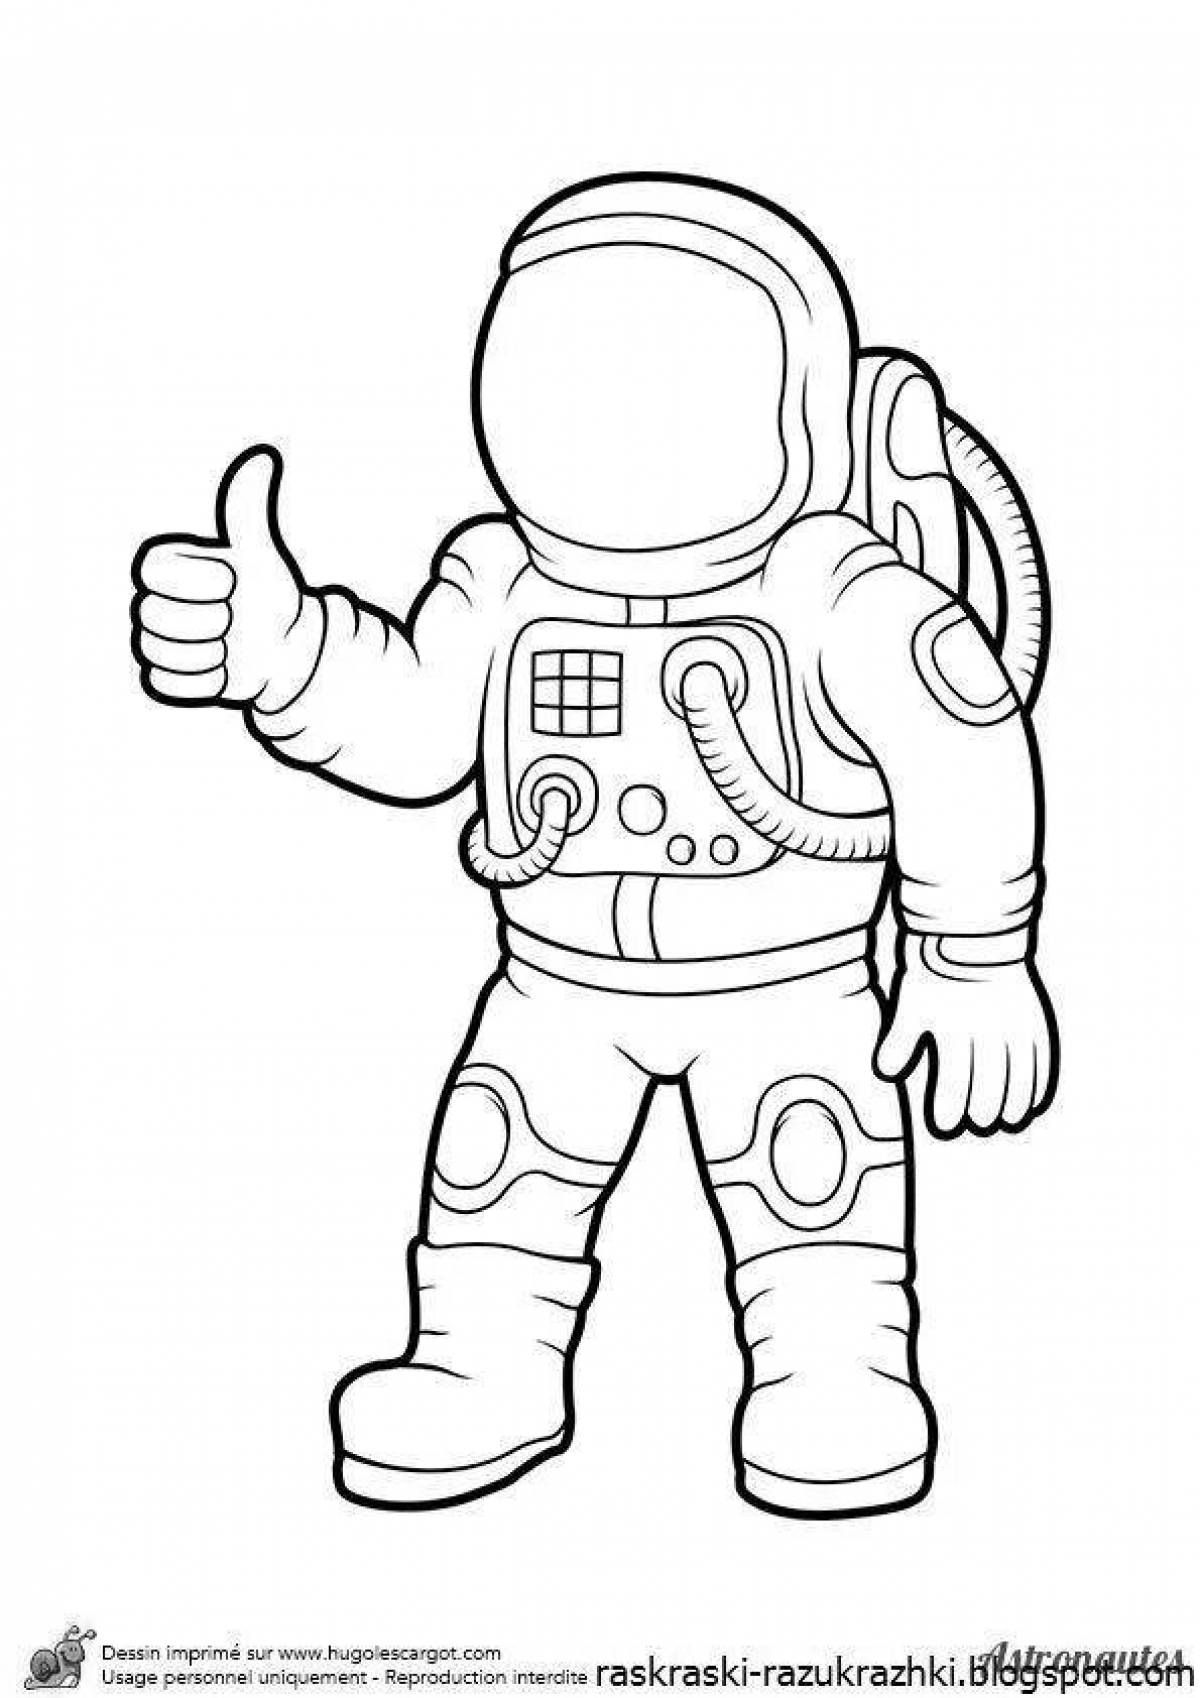 Как нарисовать скафандр. Раскраска космонавт в скафандре. Космонавт раскраска для детей. Раскраска Космонавта в скафандре для детей. Космонавт раскраска для малышей.